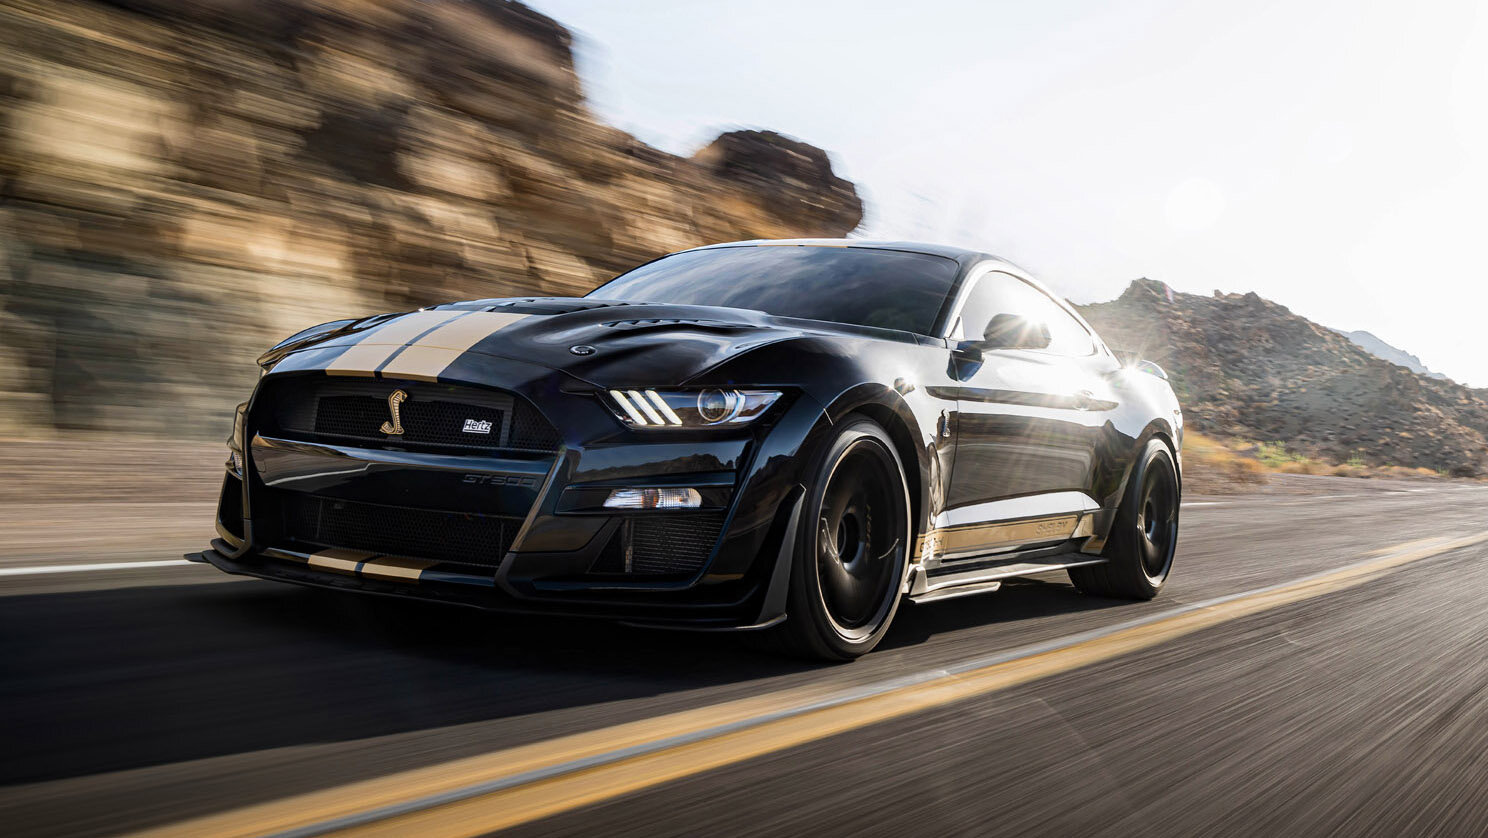 Shelby построит 900-сильный Mustang специально для прокатной фирмы